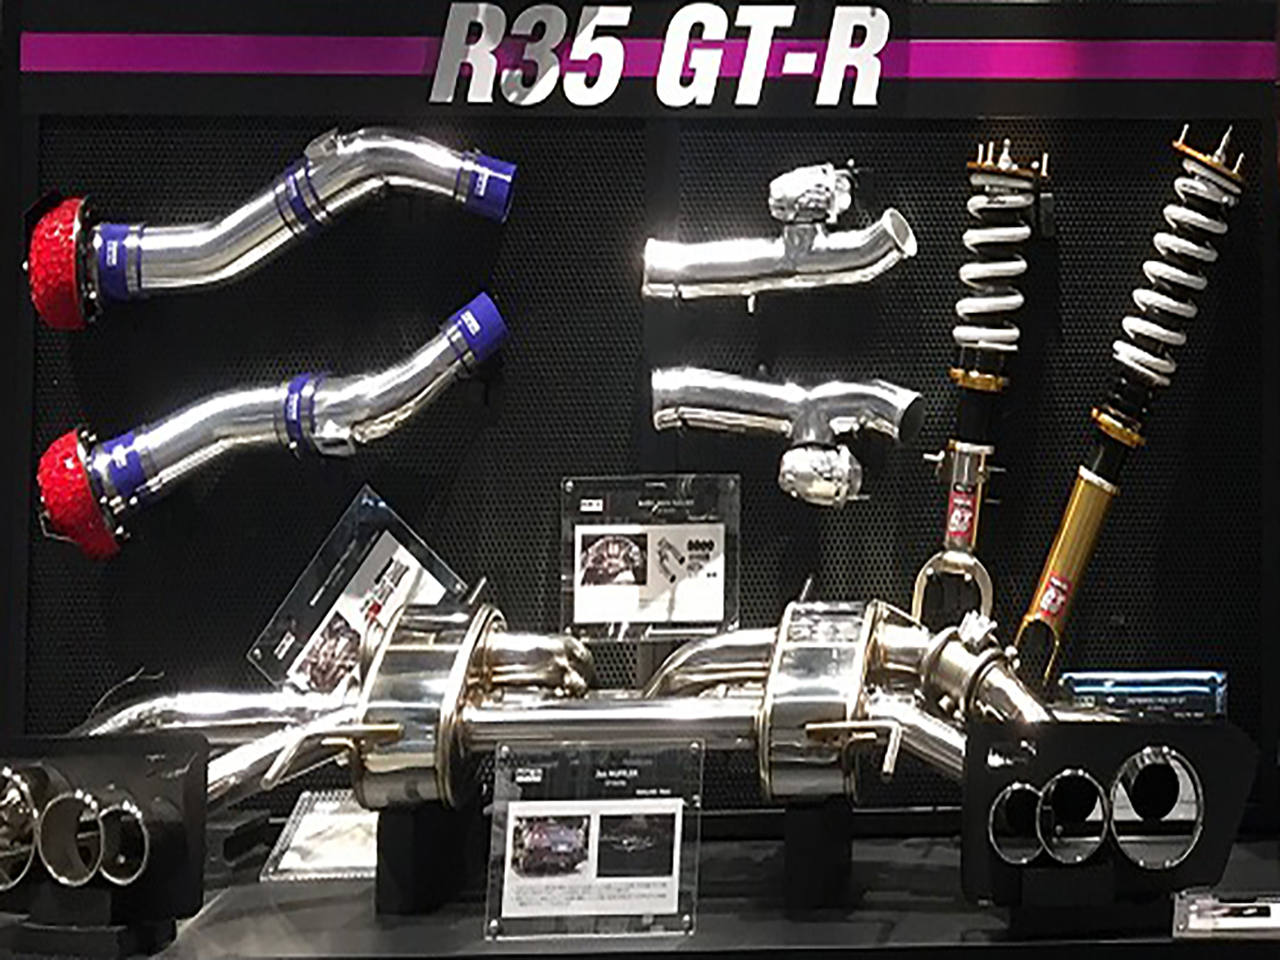 R35 GT-Rコーナー